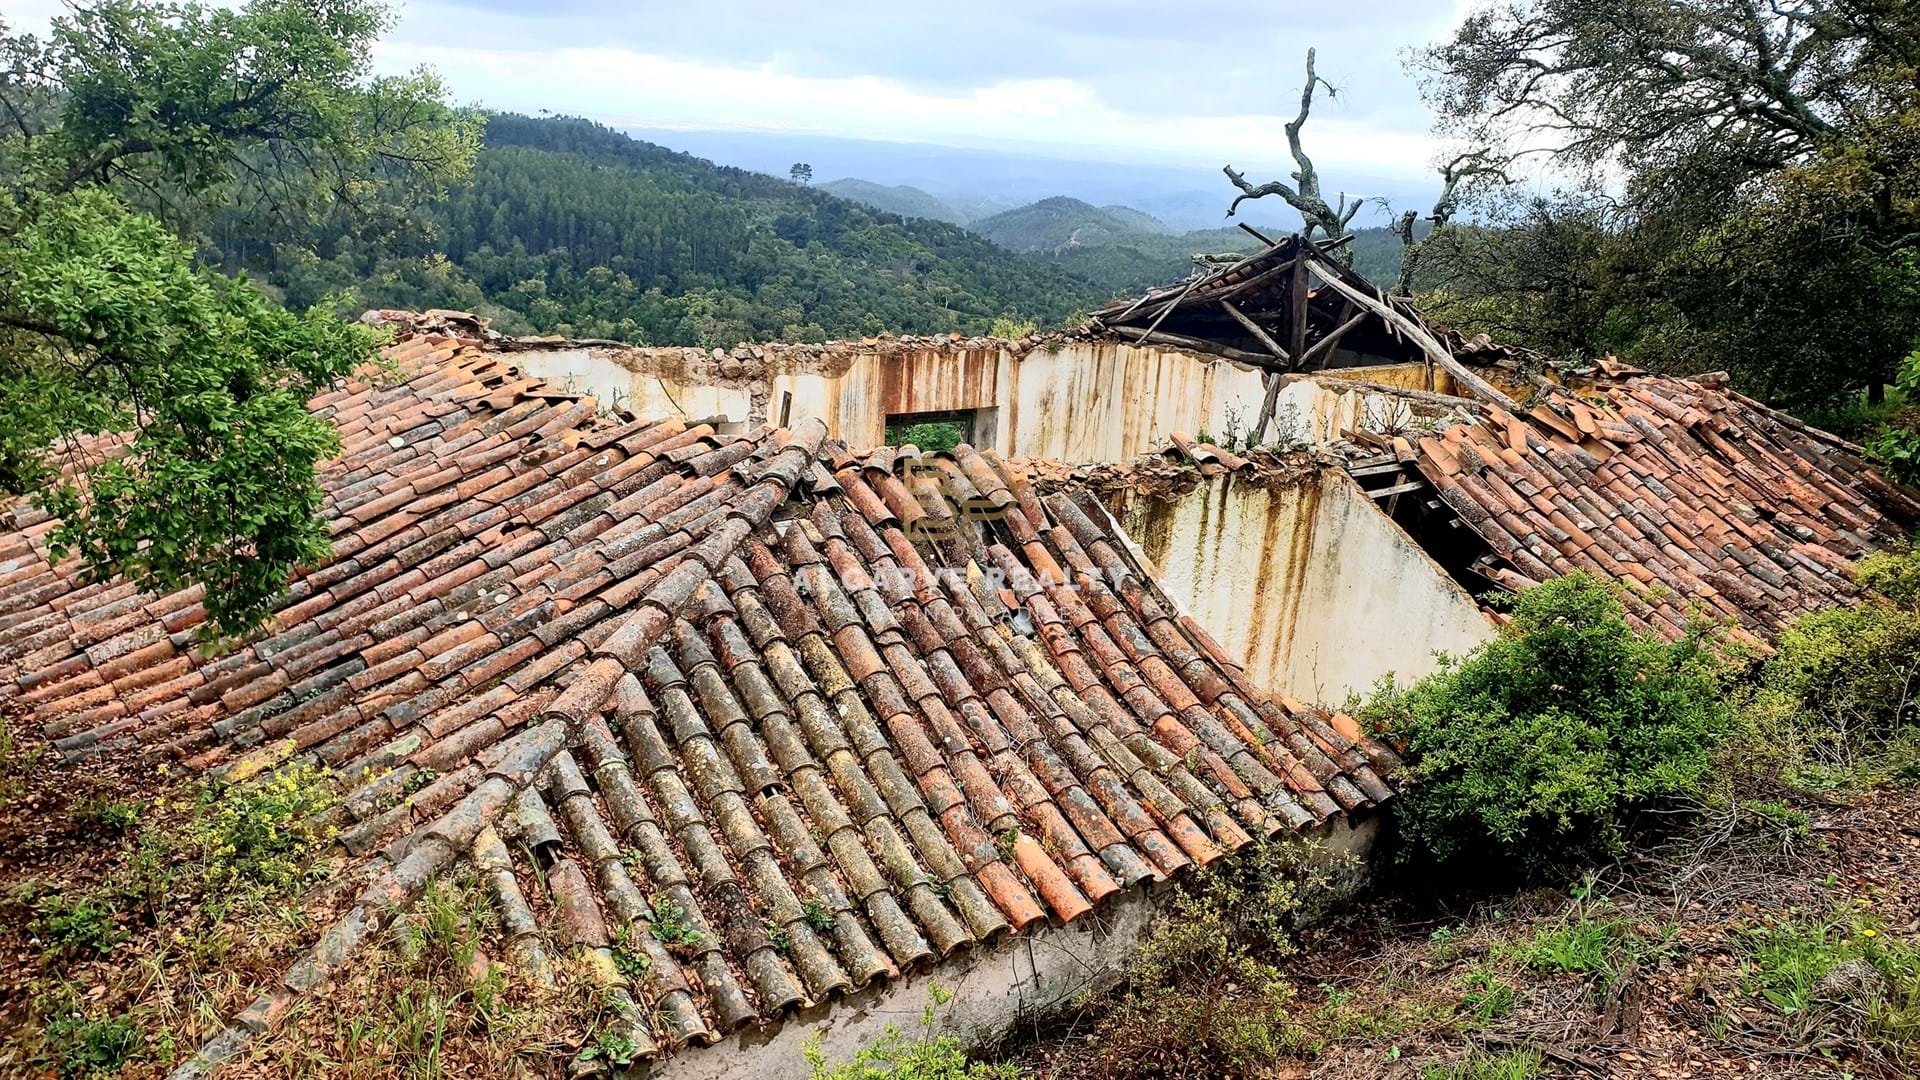 Gralhos - Monchique - VENDA – MONCHIQUE ruina para investimento com terreno rustico com 1000 m2 – vista magnífica